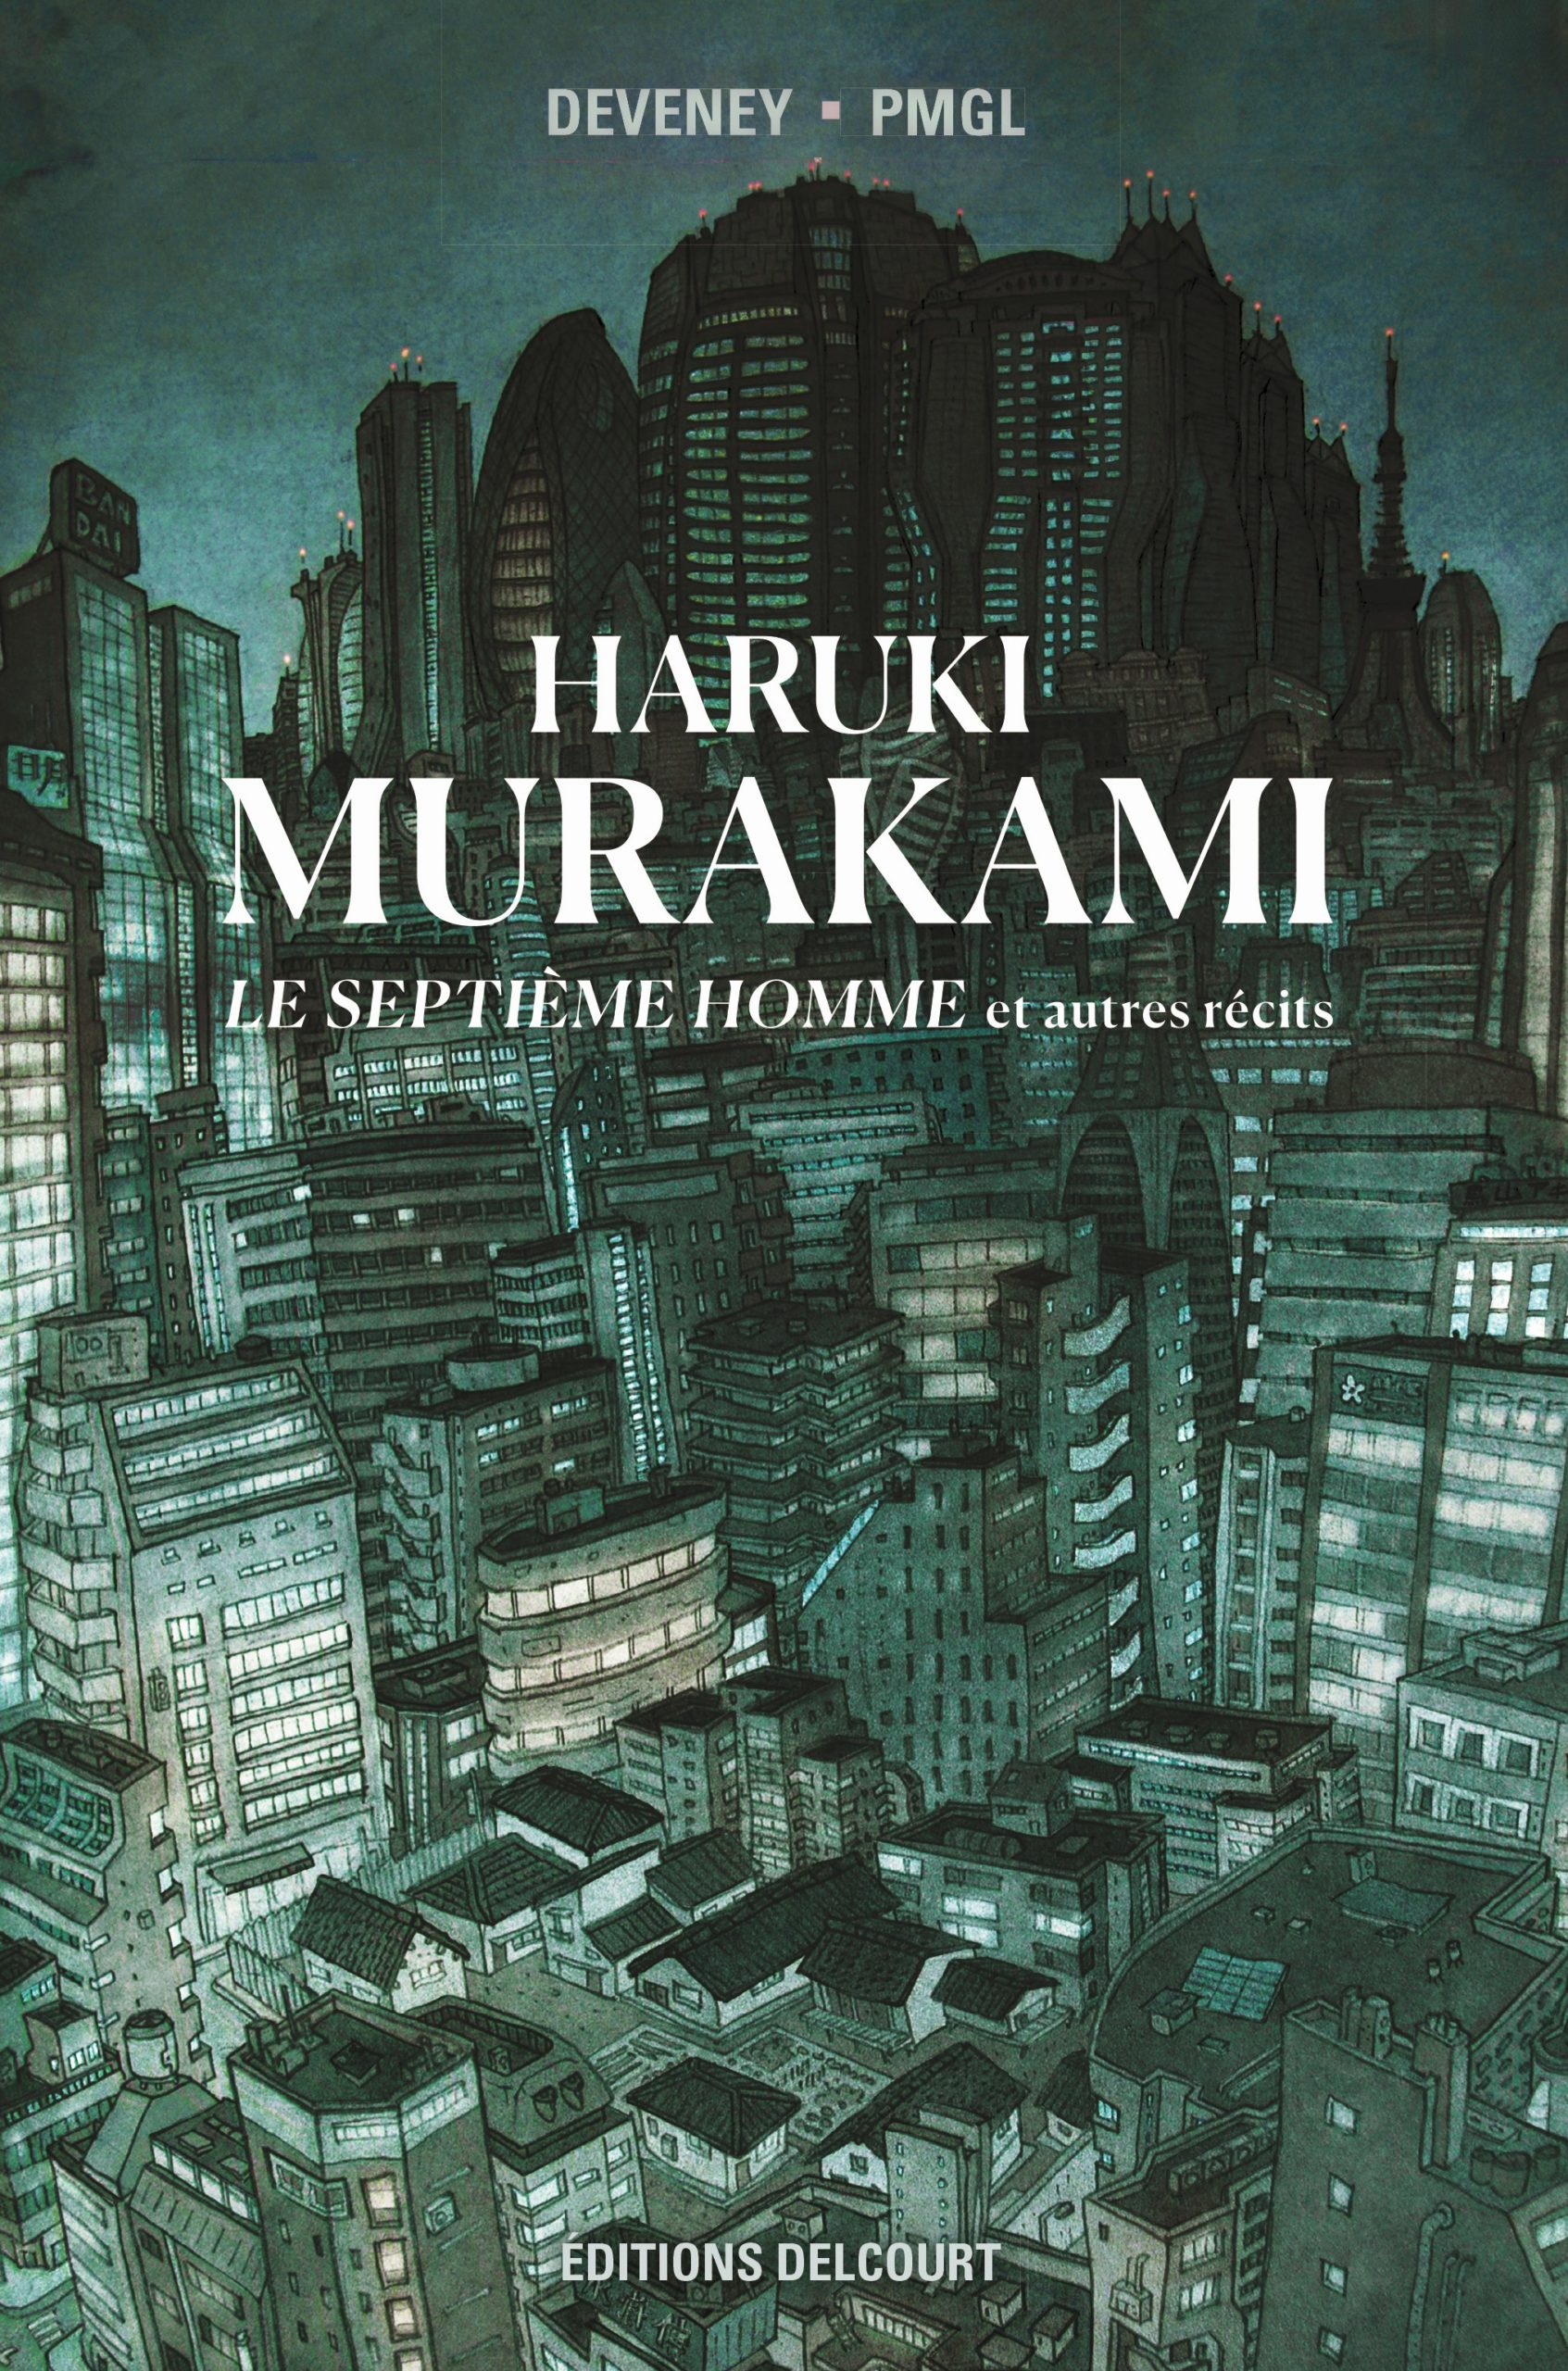 Haruki Murakami, Le septième homme et autres récits de Devenay et PMGL.